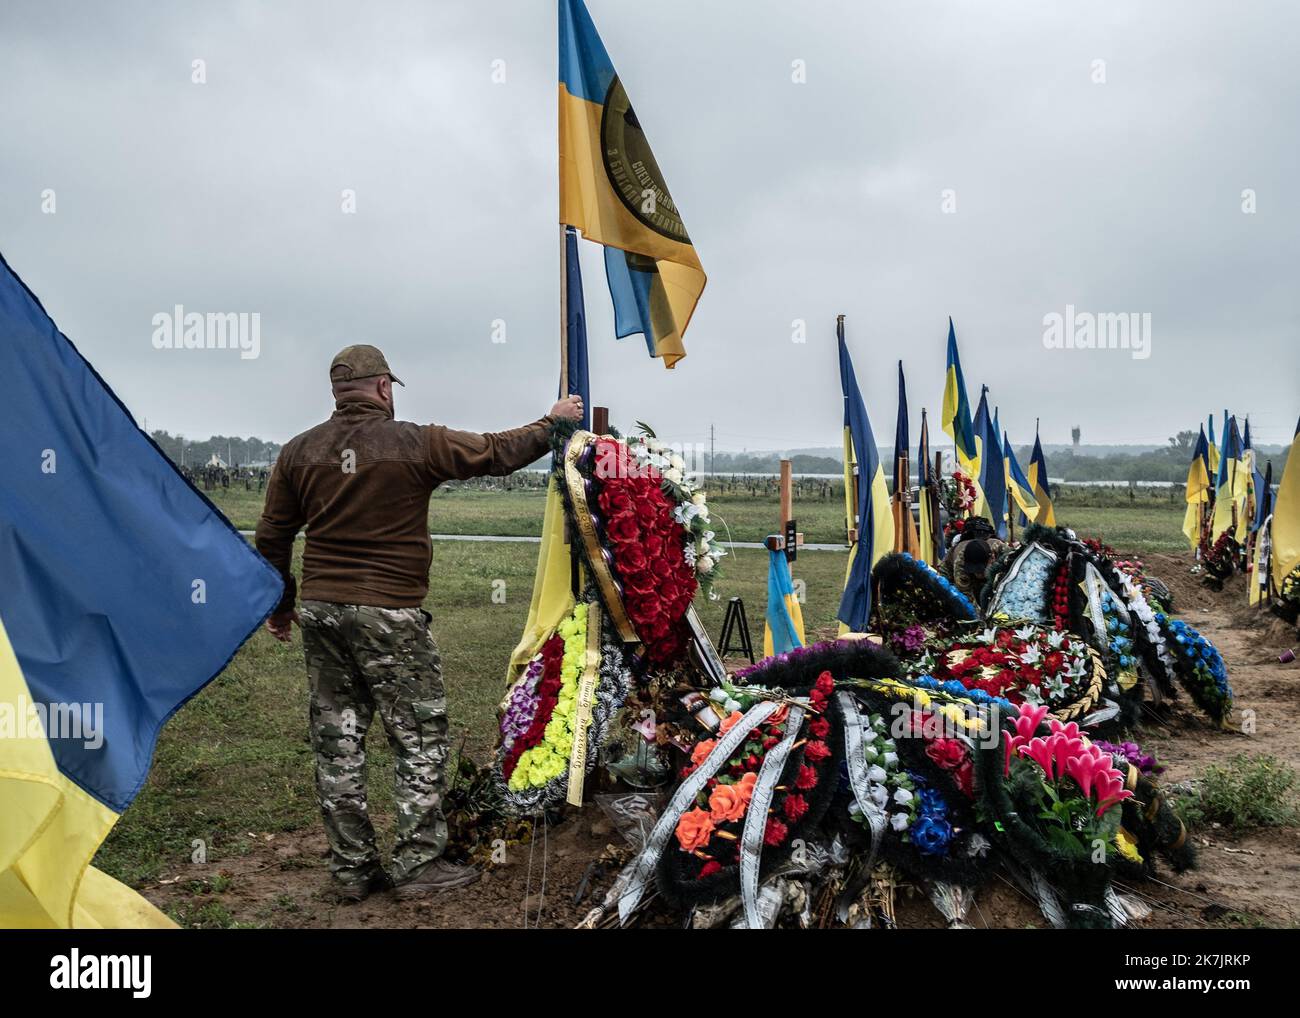 ©Sadak Souici / Le Pictorium/MAXPPP - Kharkiv 16/07/2022 Sadak Souici / Le Pictorium - 16/7/2022 - Ukraine / Kharkov / Kharkiv - Un soldat ukrainien tient le drapeau de son bataillon sur la tombe de son camarade mort sur la ligne de front a Kharkiv. Le cimetiere N°18 de Kharkiv a Bezlioudivka qui comprend une section militaire datant d'il y a plusieurs annees, accueille les depouilles des soldats morts depuis le debut de la guerre contre la Russie. Samedi, plusieurs enterrements de soldats y ont eu lieu. / 16/7/2022 - Ukraine / Kharkov / Kharkiv - A Ukrainian soldier holds the flag of his batt Stock Photo